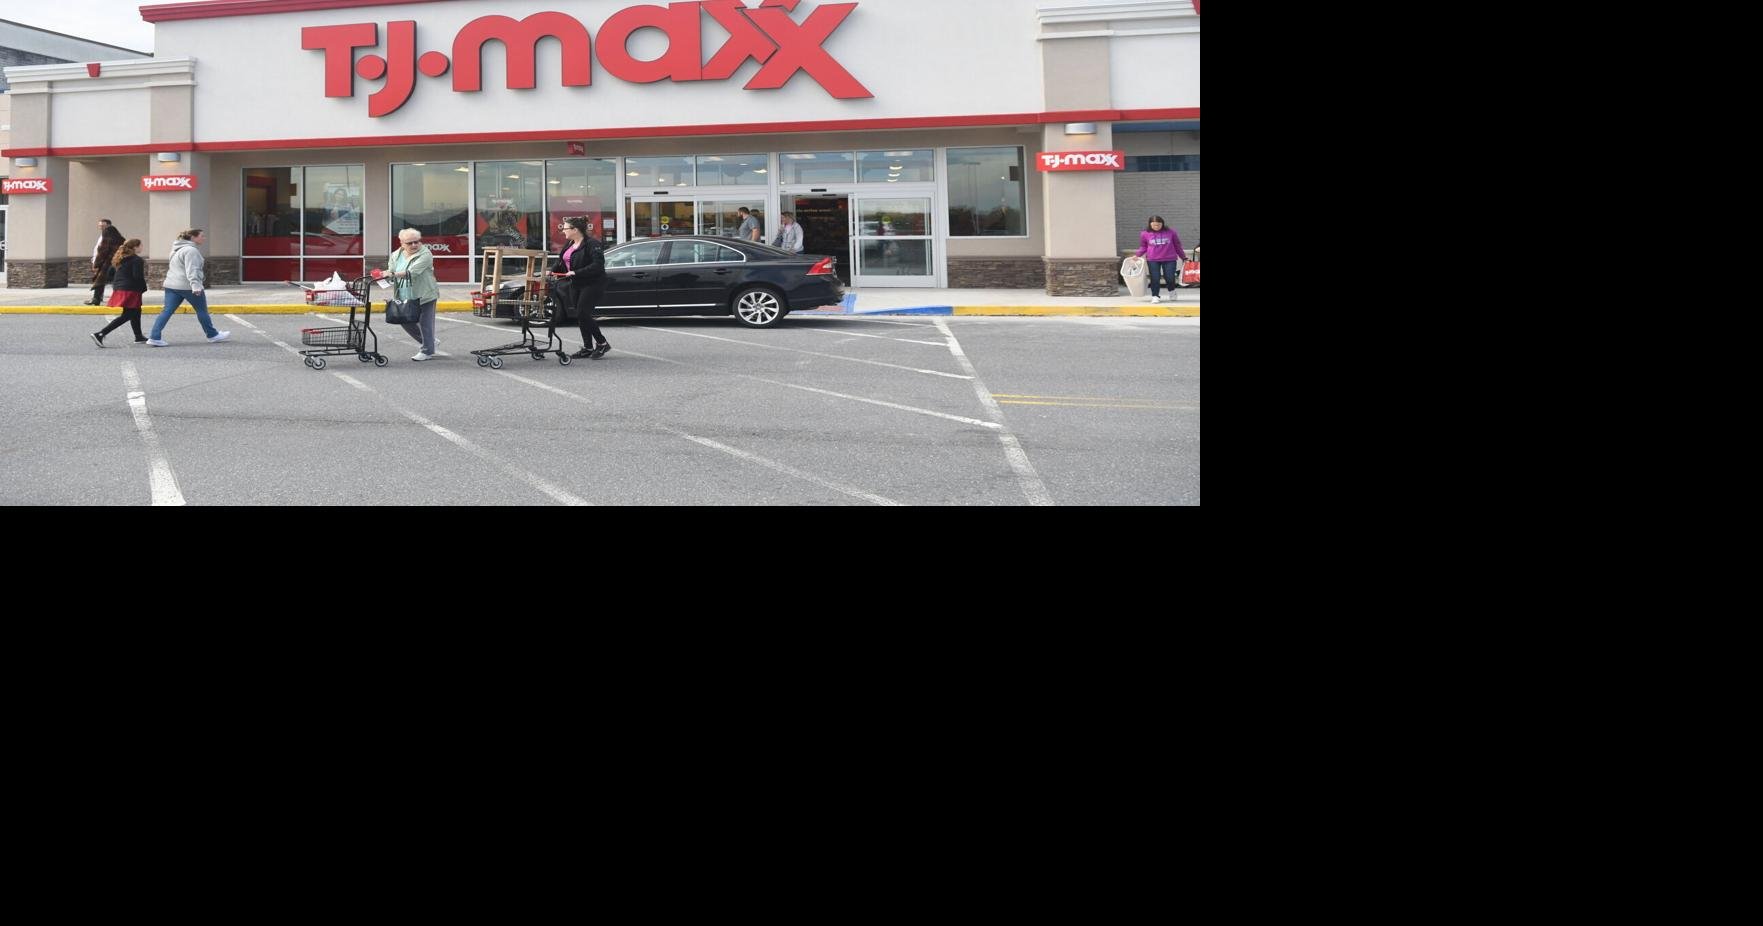 TJMaxx, TJ Maxx store Grand Traverse Mall Traverse City Mic…